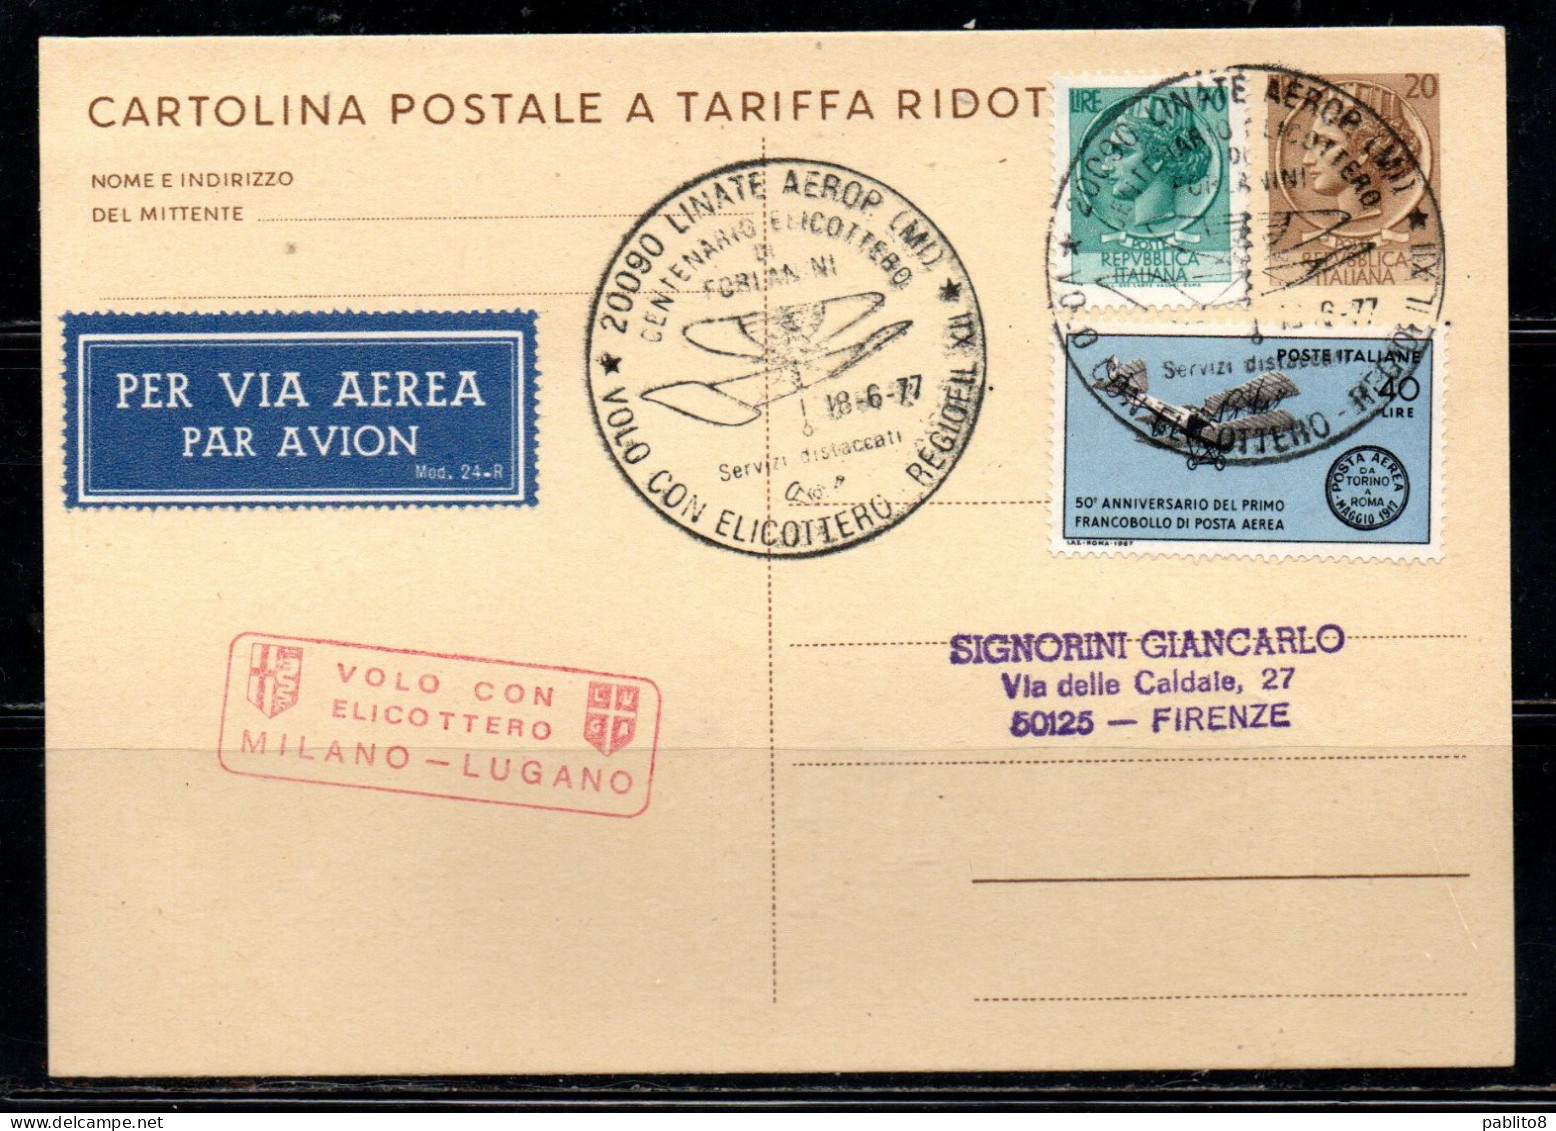 ITALIA REPUBBLICA ITALY REPUBLIC CARTOLINA POSTALE 18-6-1977 VOLO CON ELICOTTERO MILANO - LUGANO FORLANINI VIAGGIATA - Stamped Stationery